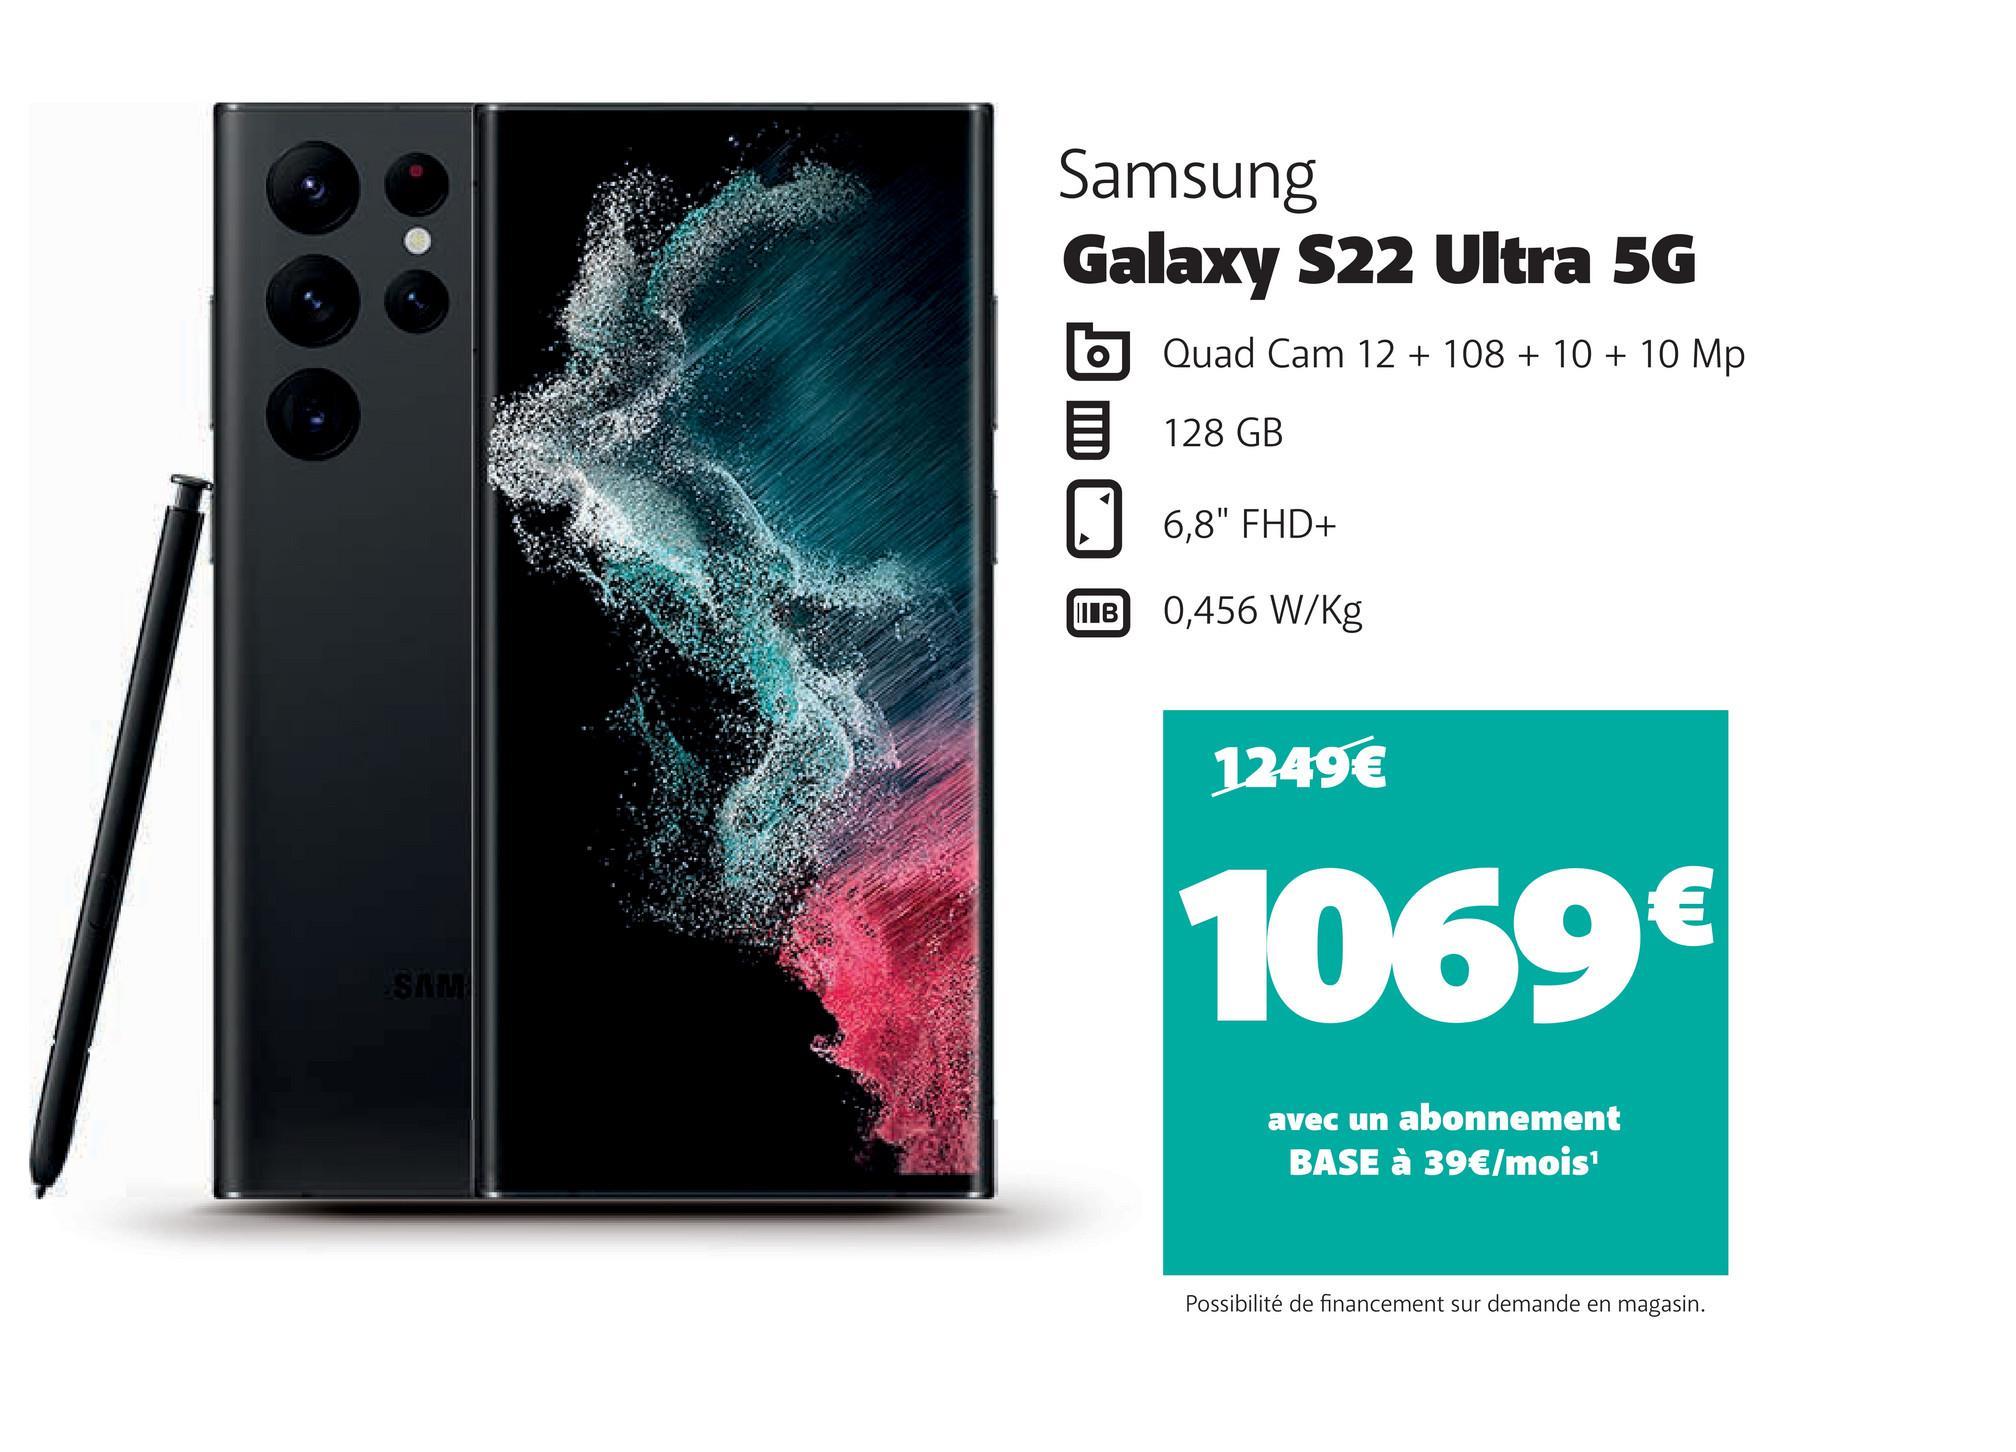 SAM
Samsung
Galaxy S22 Ultra 5G
Quad Cam 12 + 108 + 10 + 10 Mp
128 GB
||| В
6,8" FHD+
0,456 W/kg
1249€
1069€
avec un abonnement
BASE à 39€/mois¹
Possibilité de financement sur demande en magasin.